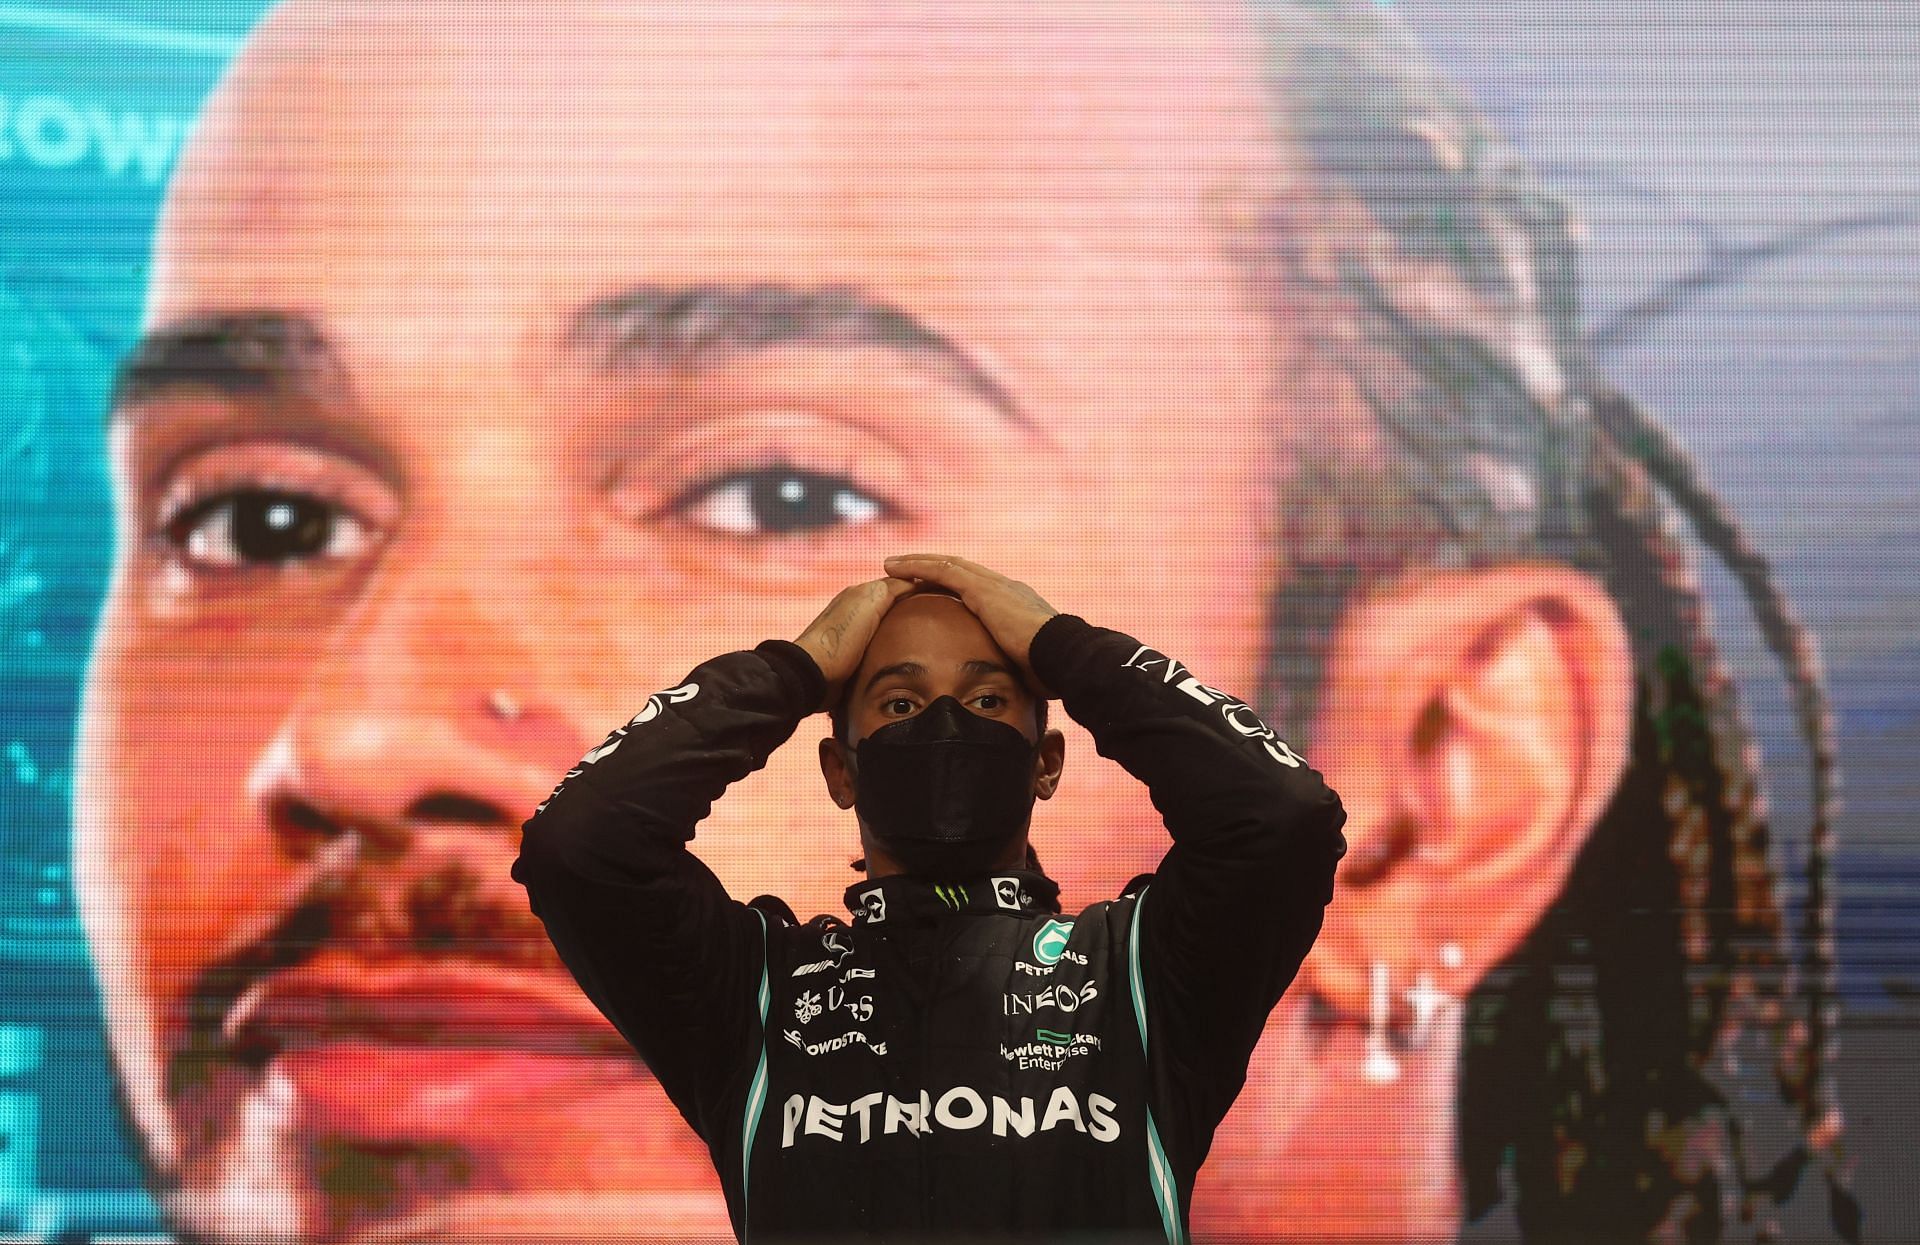 F1 Grand Prix of Qatar - Lewis Hamilton wins Qatar Grand Prix.